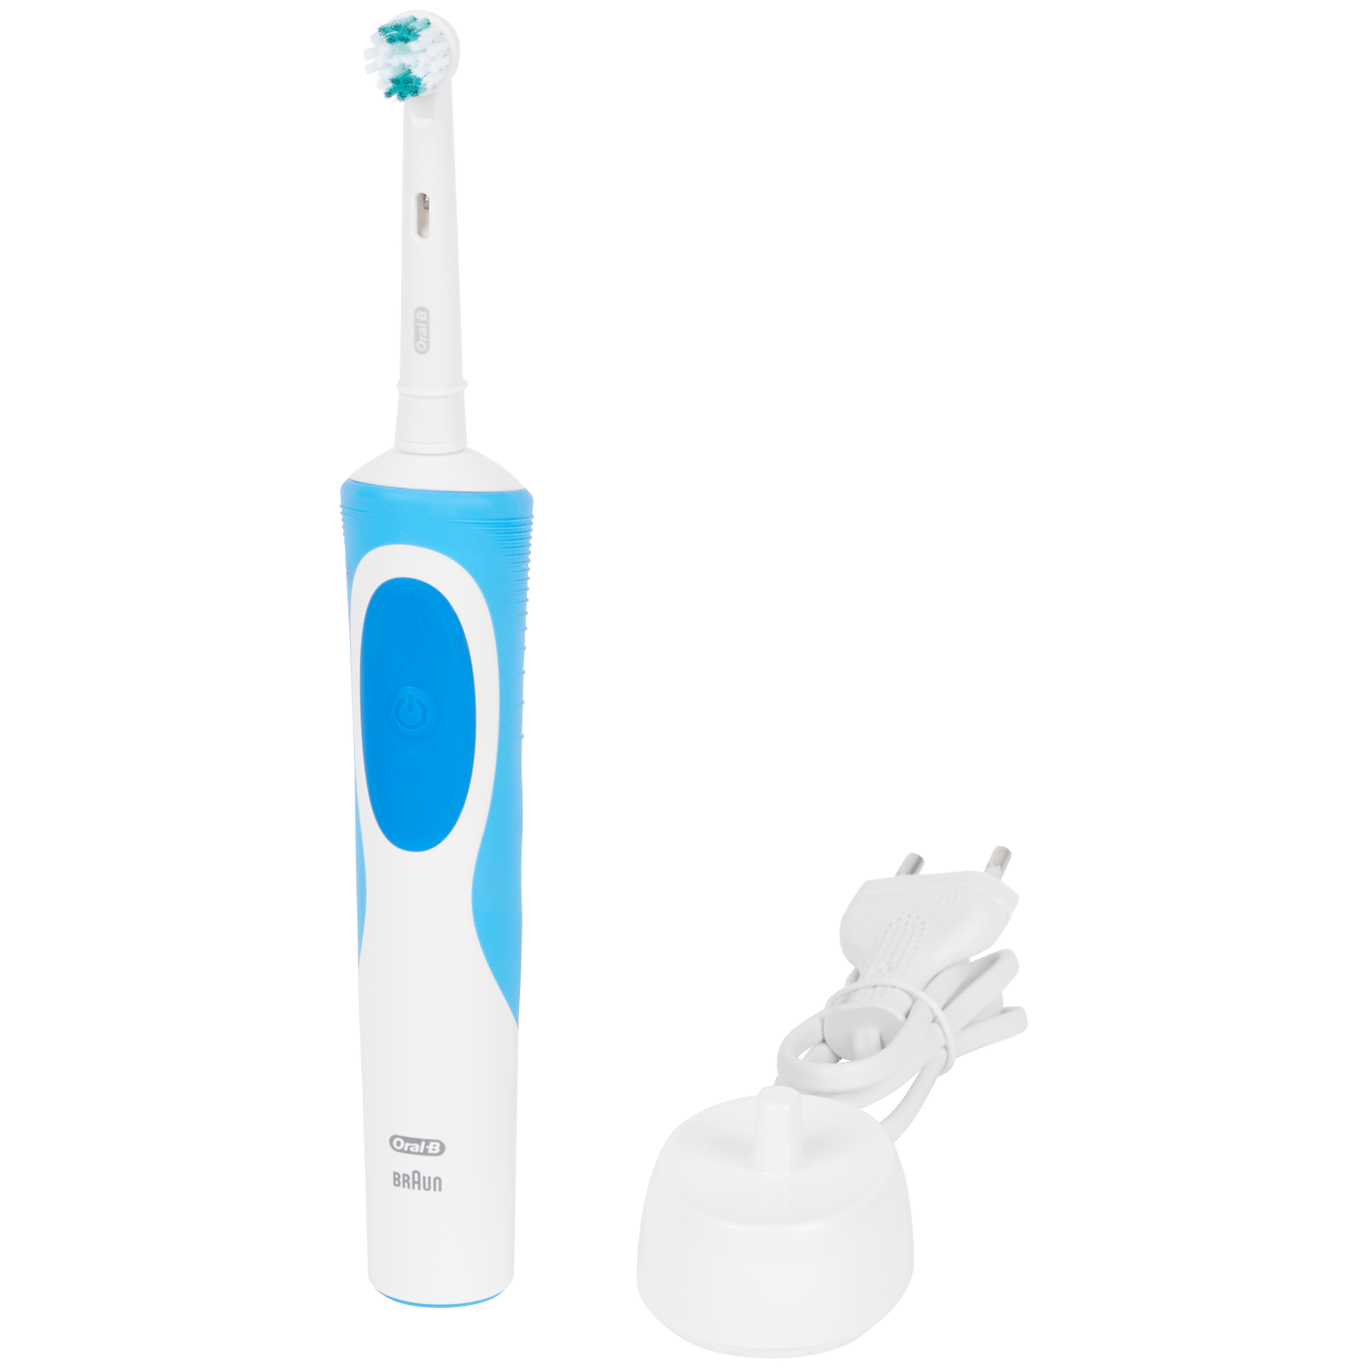 Oral-B Vitality Elektrische Zahnbürste